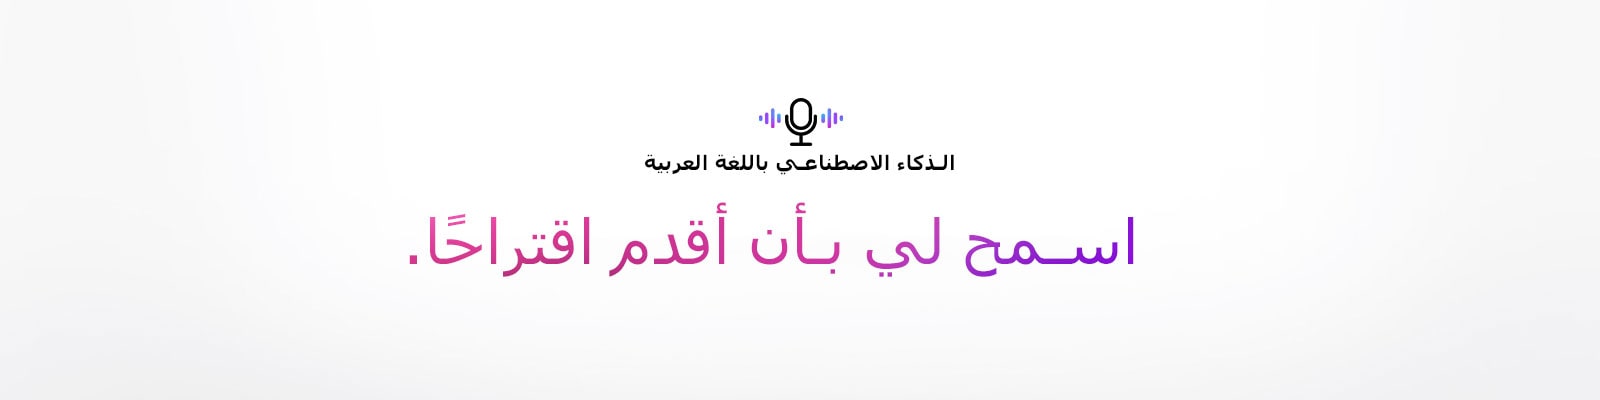 رمز الأمر الصوتي وجملة تقول "الذكاء الاصطناعي باللغة العربية". هناك جملة تقول "اسمح لي بأن أقدم اقتراحًا."